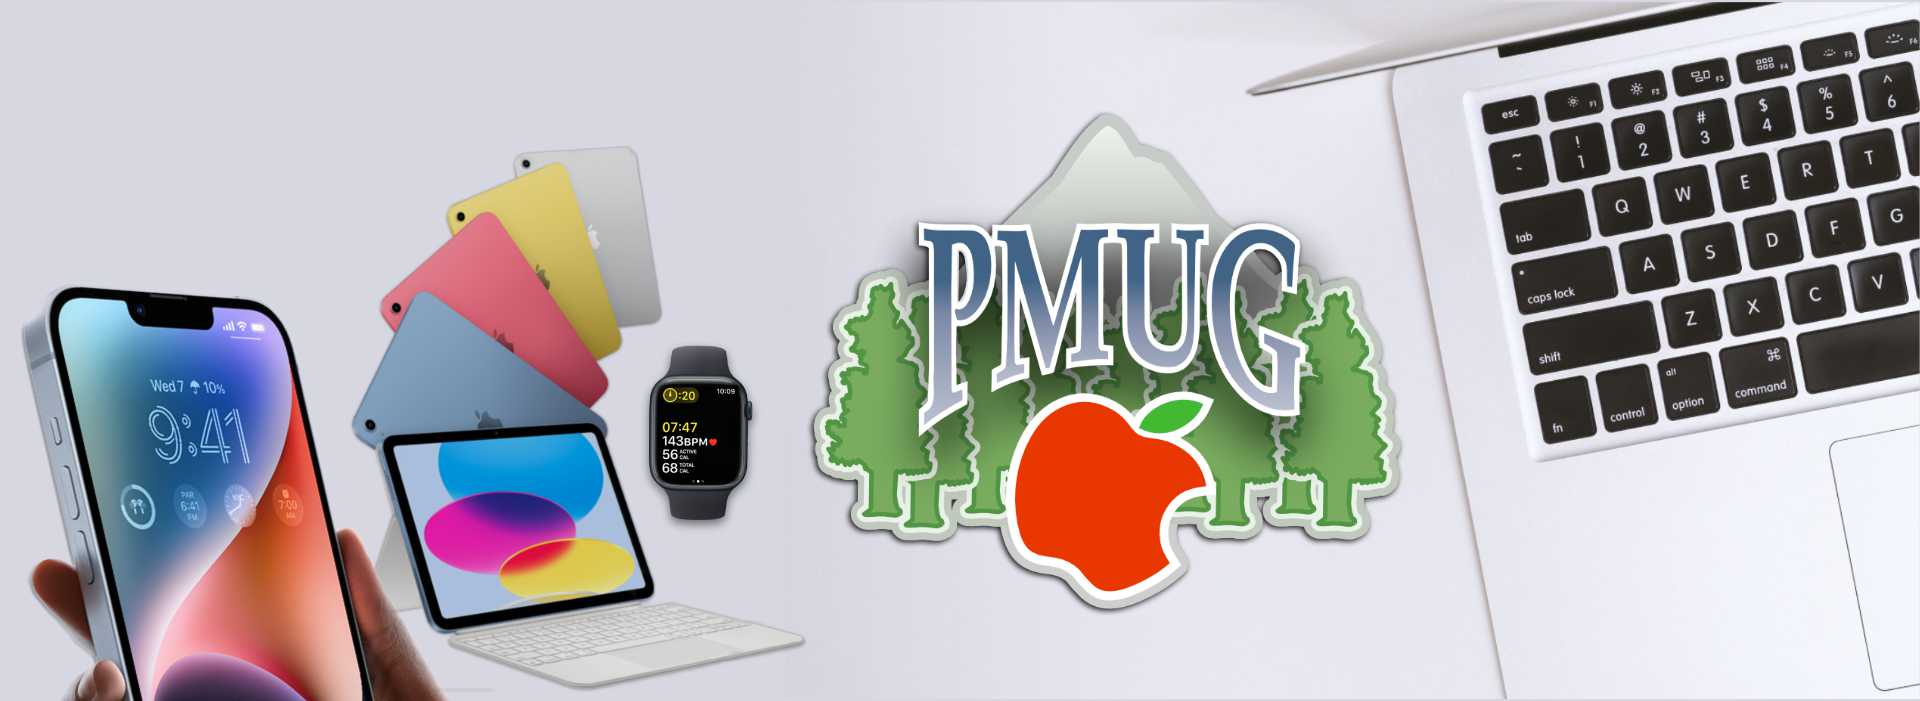 PMUG logo with Apple devices on display.